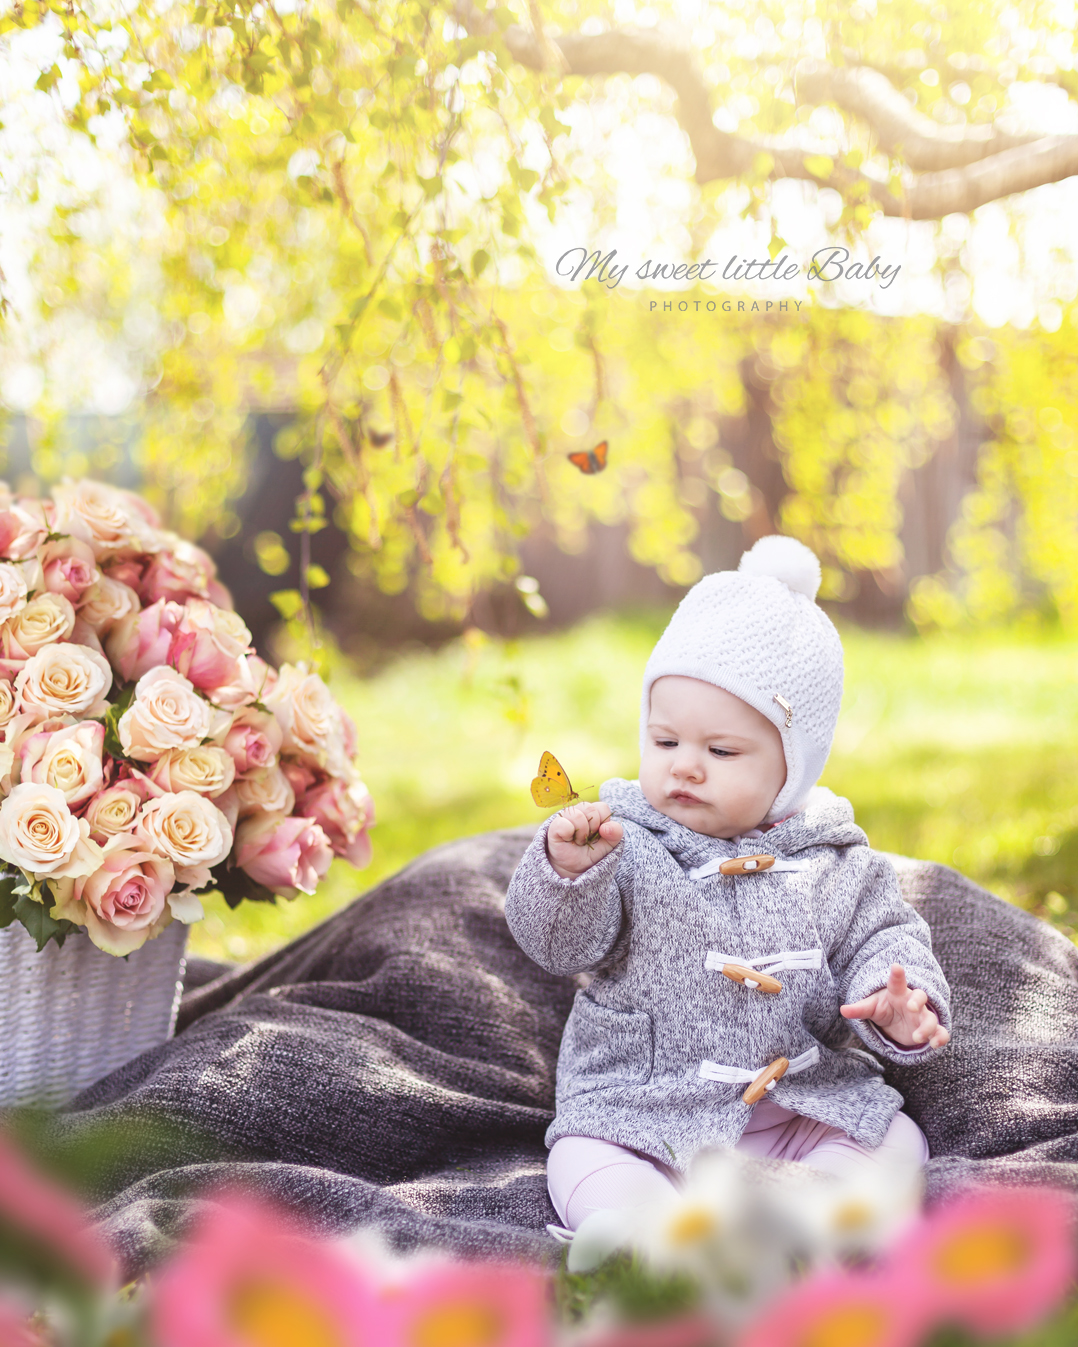 So gelingen dir Babyfotos im Garten - auch mit dem Smartphone - Barbara Lachner - Autorin und Fotografin - Barbara Lachner Blog-Bei Outdoor-Fotografie ist das Spiel mit Gegenlicht besonders schön. Kombiniert mit einem gezielt unscharfen Hintergrund um ein hübsches Bokeh zu erhalten lassen sich beeindruckende Babyfotos erstellen.